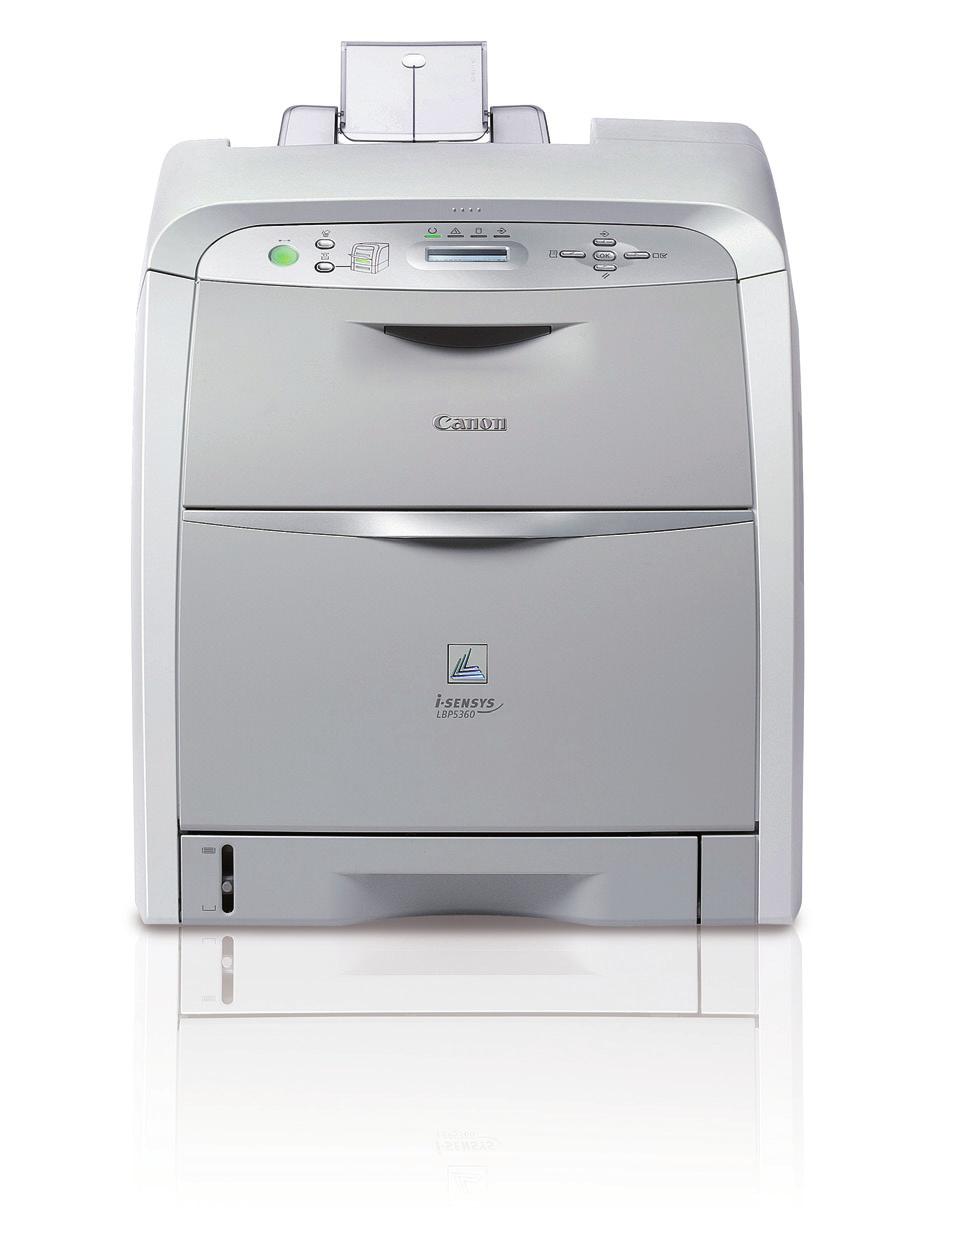 i-sensys lbp5360 laserové tiskárny a4 barevná Kompaktní barevná laserová tiskárna: rychlost barevného a černobílého tisku 2 str.